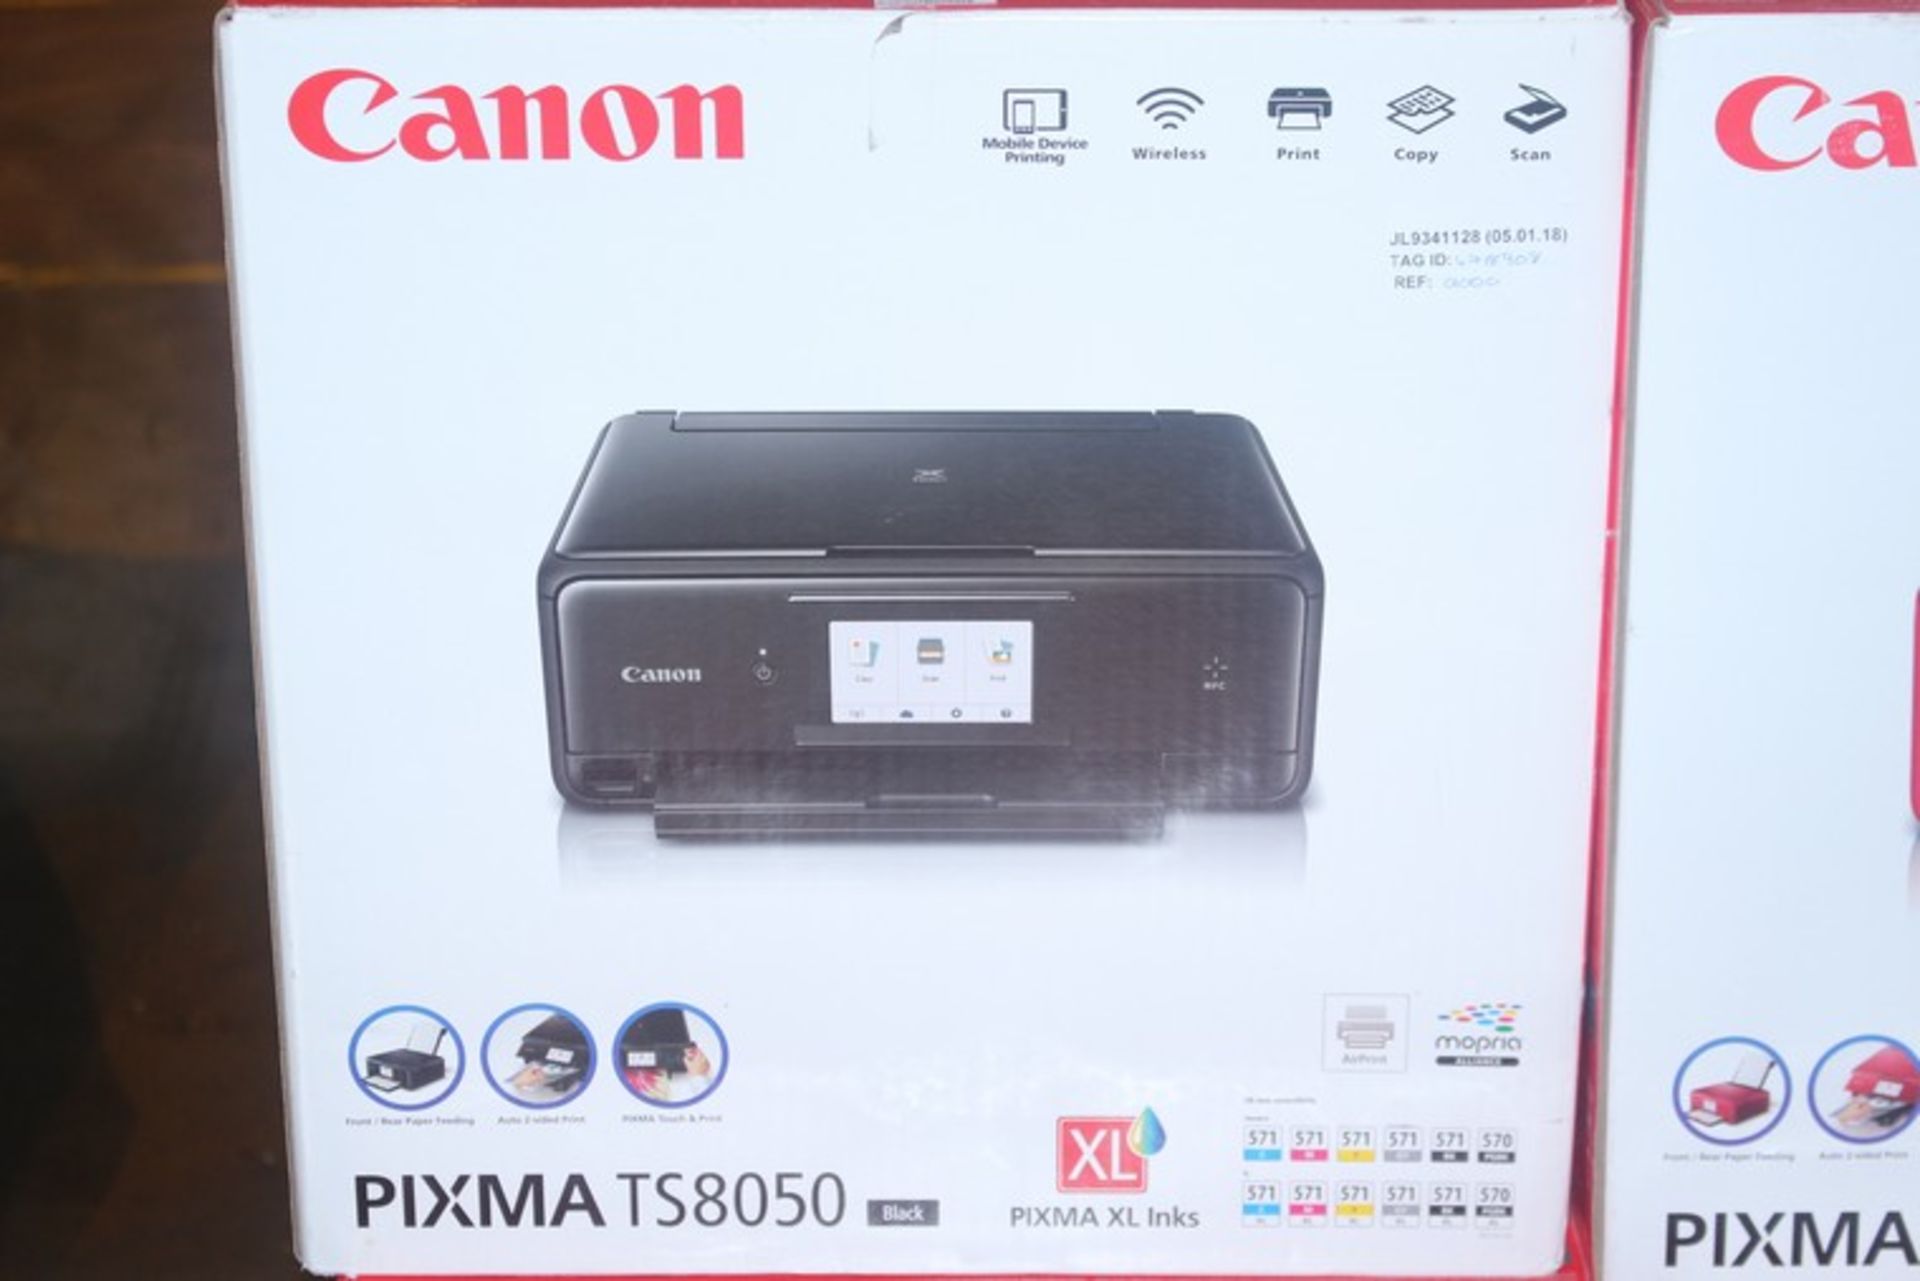 1 x CANON PIXMA TS8050 WIRELESS PRINTER SCANNER COPIER RRP £100 (05.01.18) (4718946) *PLEASE NOTE